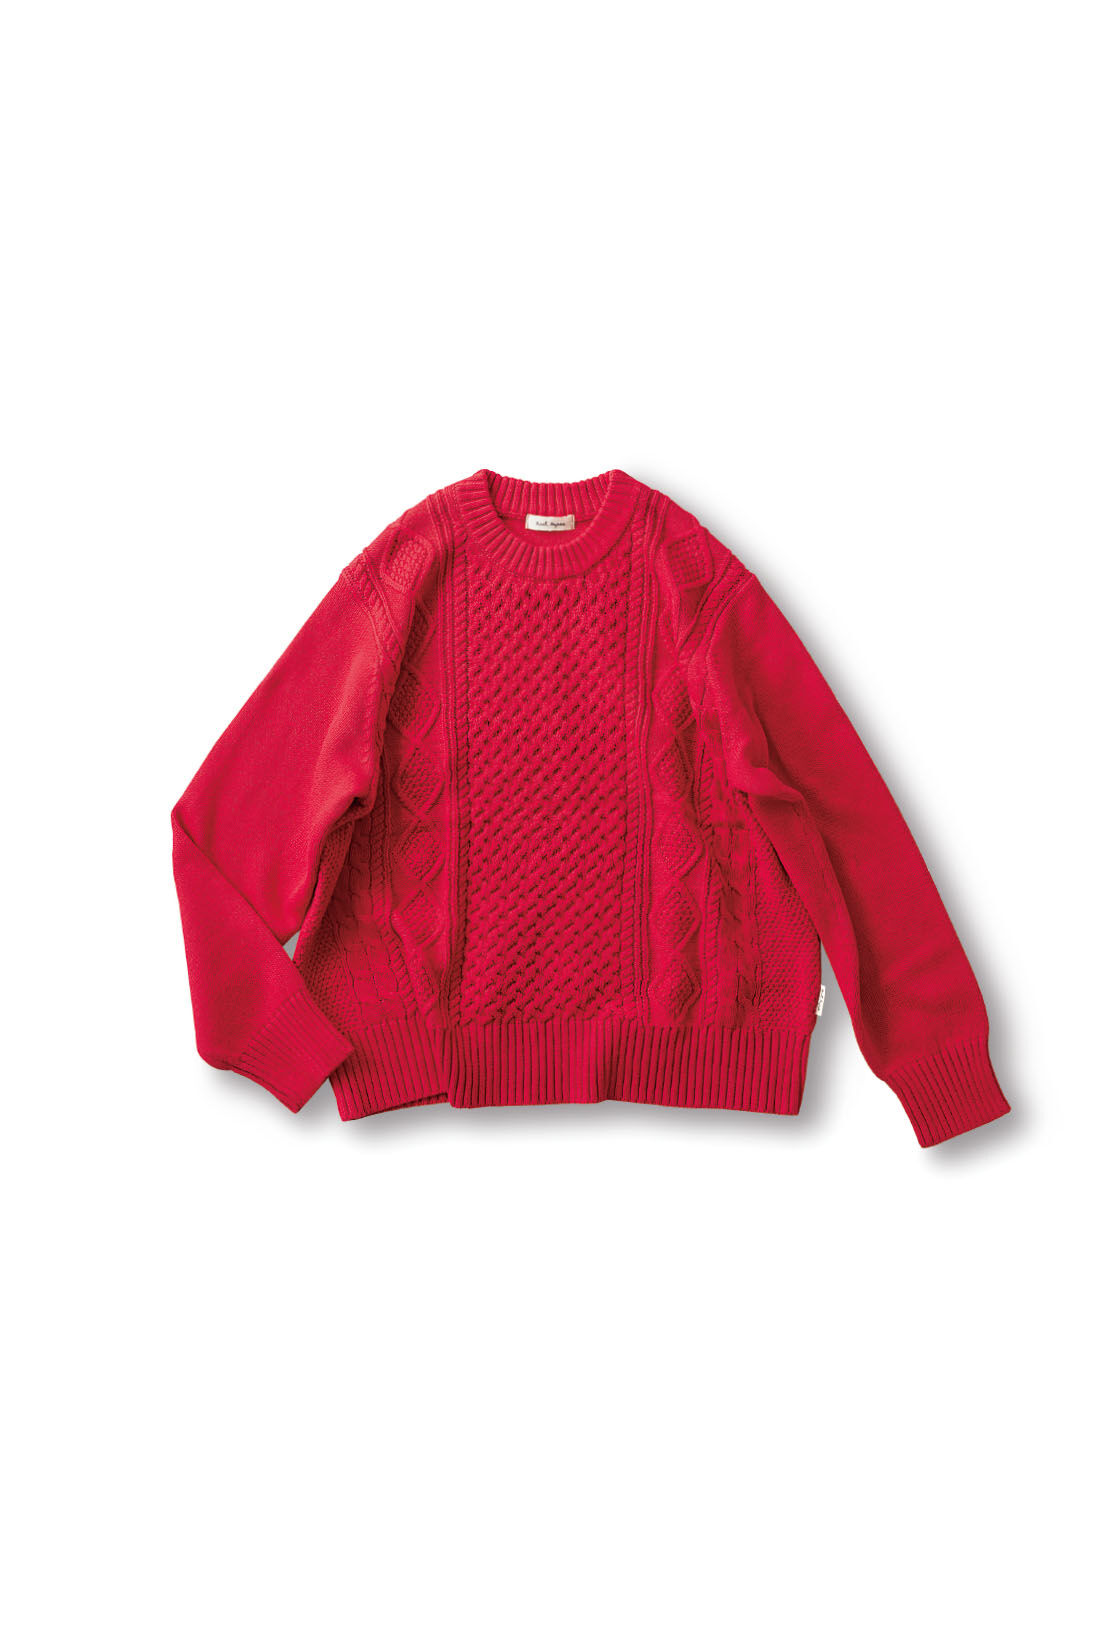 赤のニット セーター - ニット